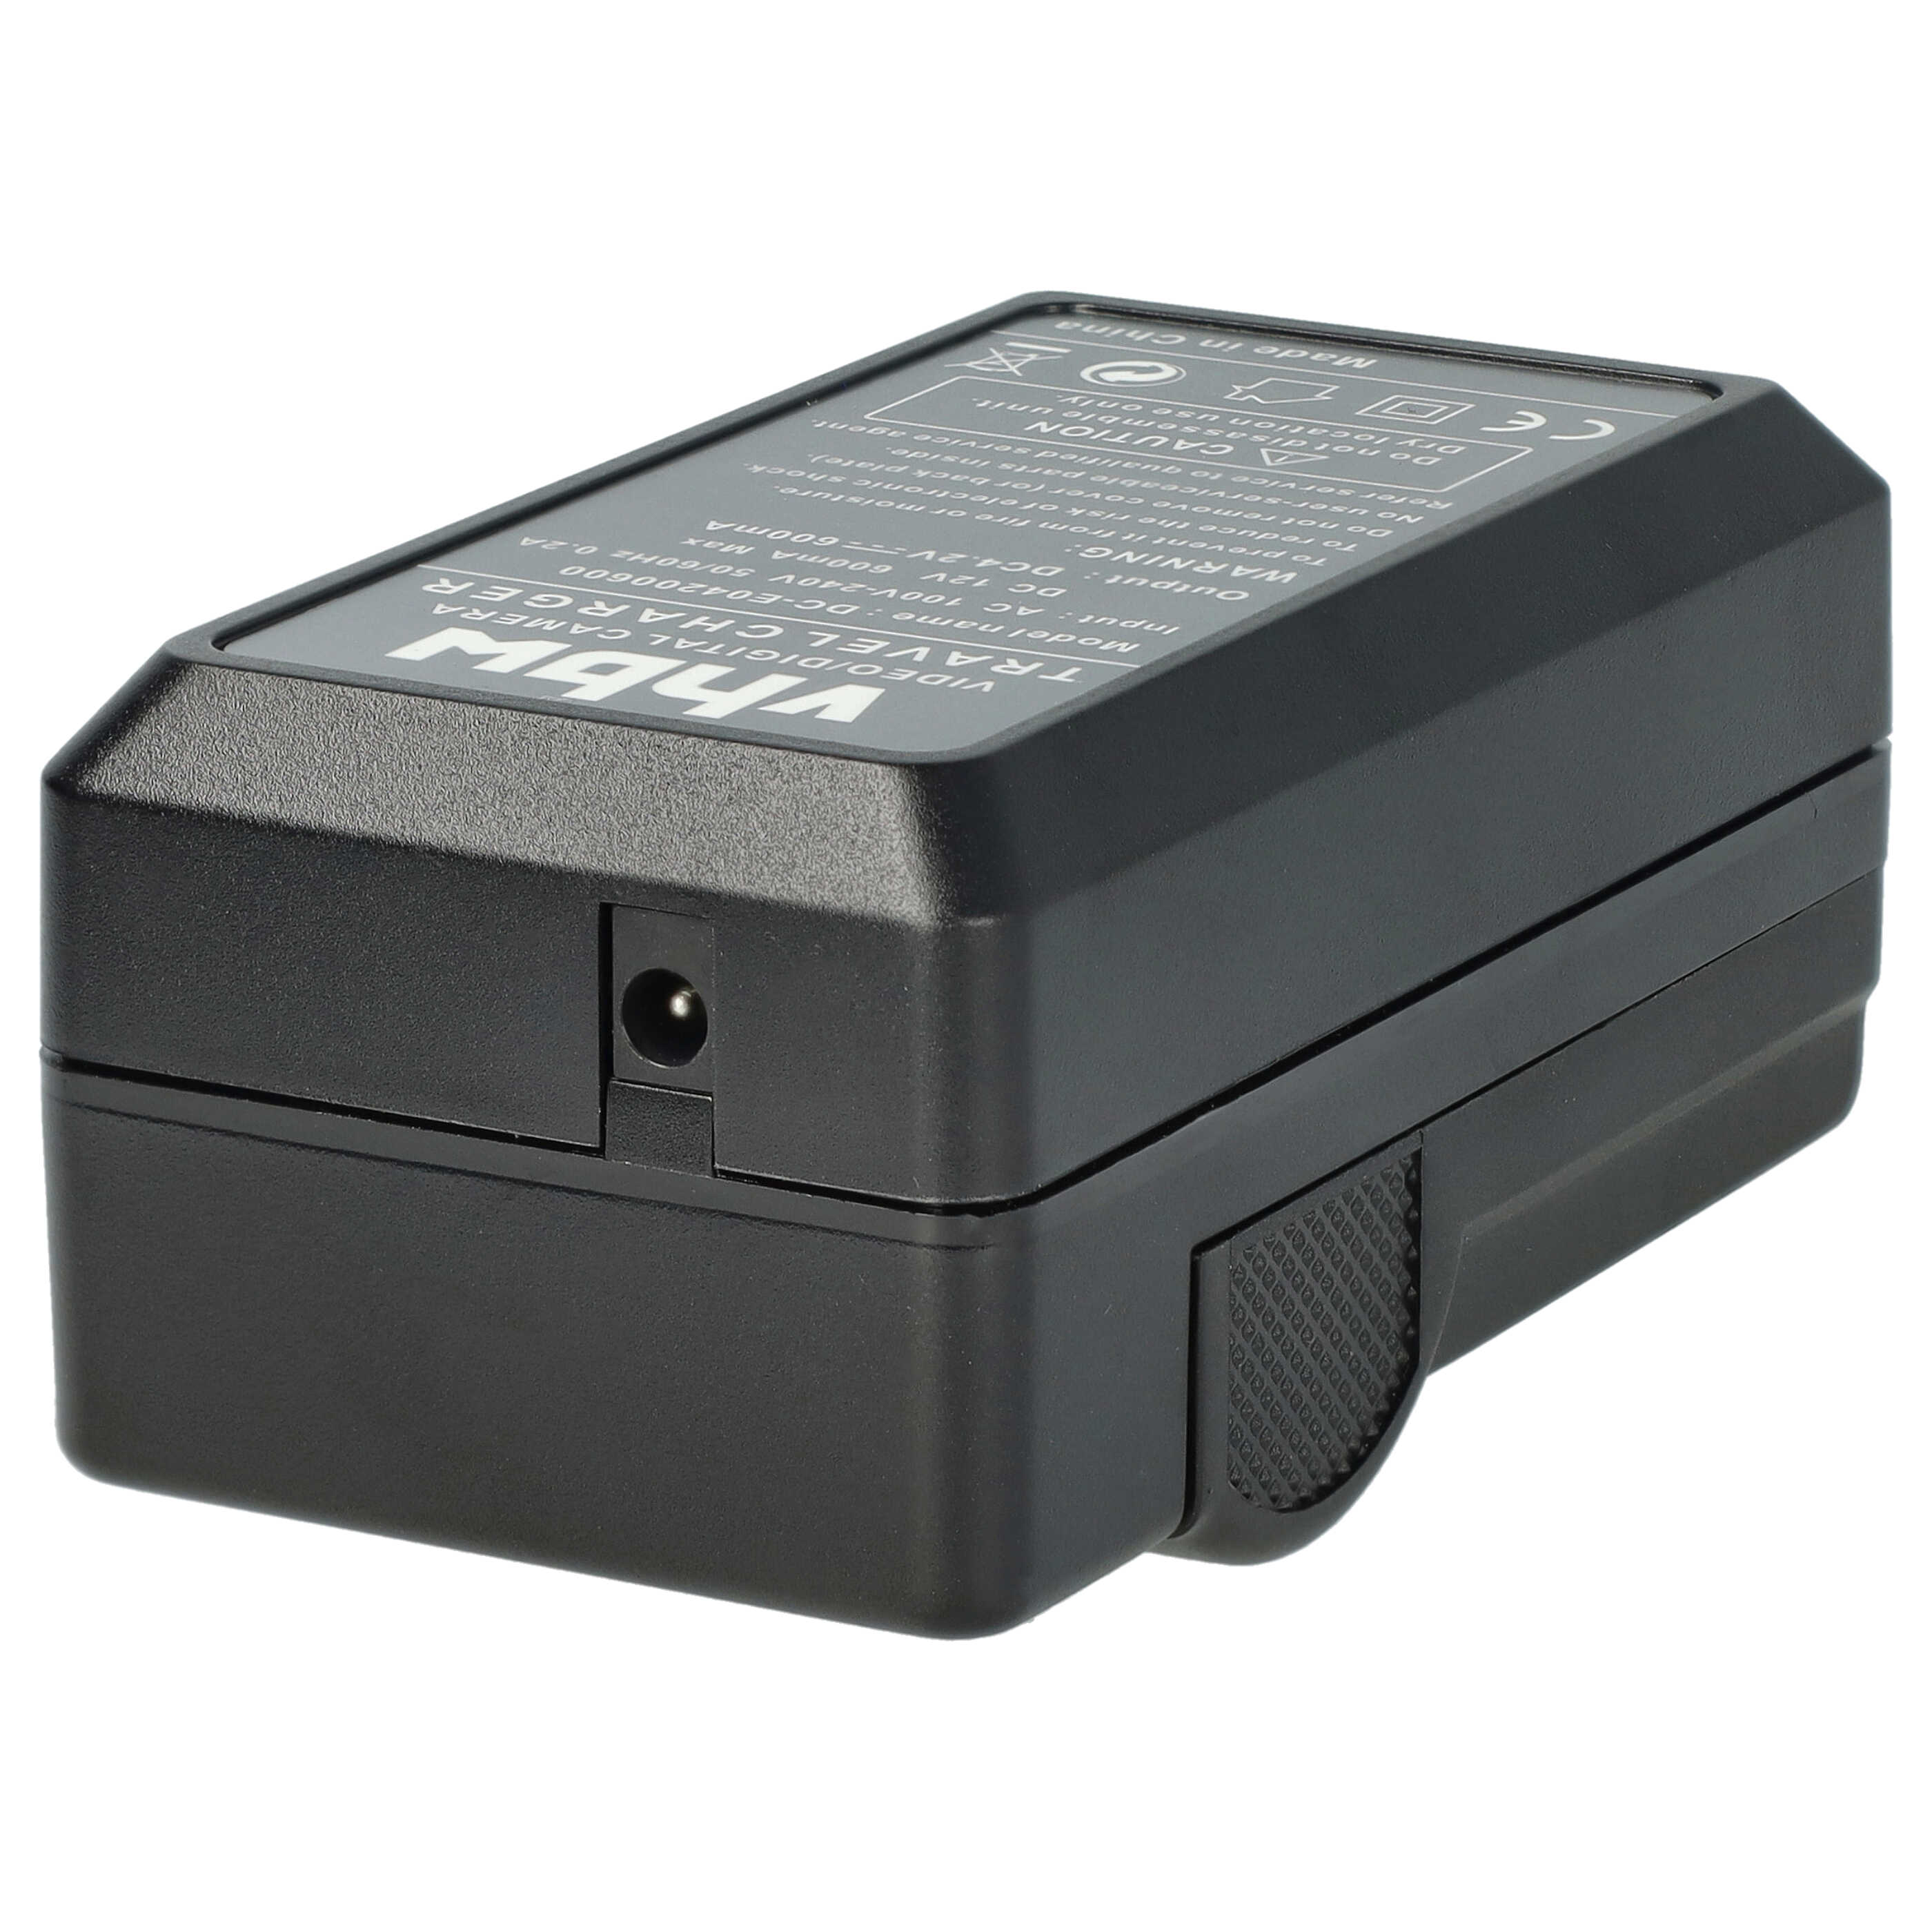 Akku Ladegerät passend für HC-V110 Kamera u.a. - 0,6 A, 4,2 V